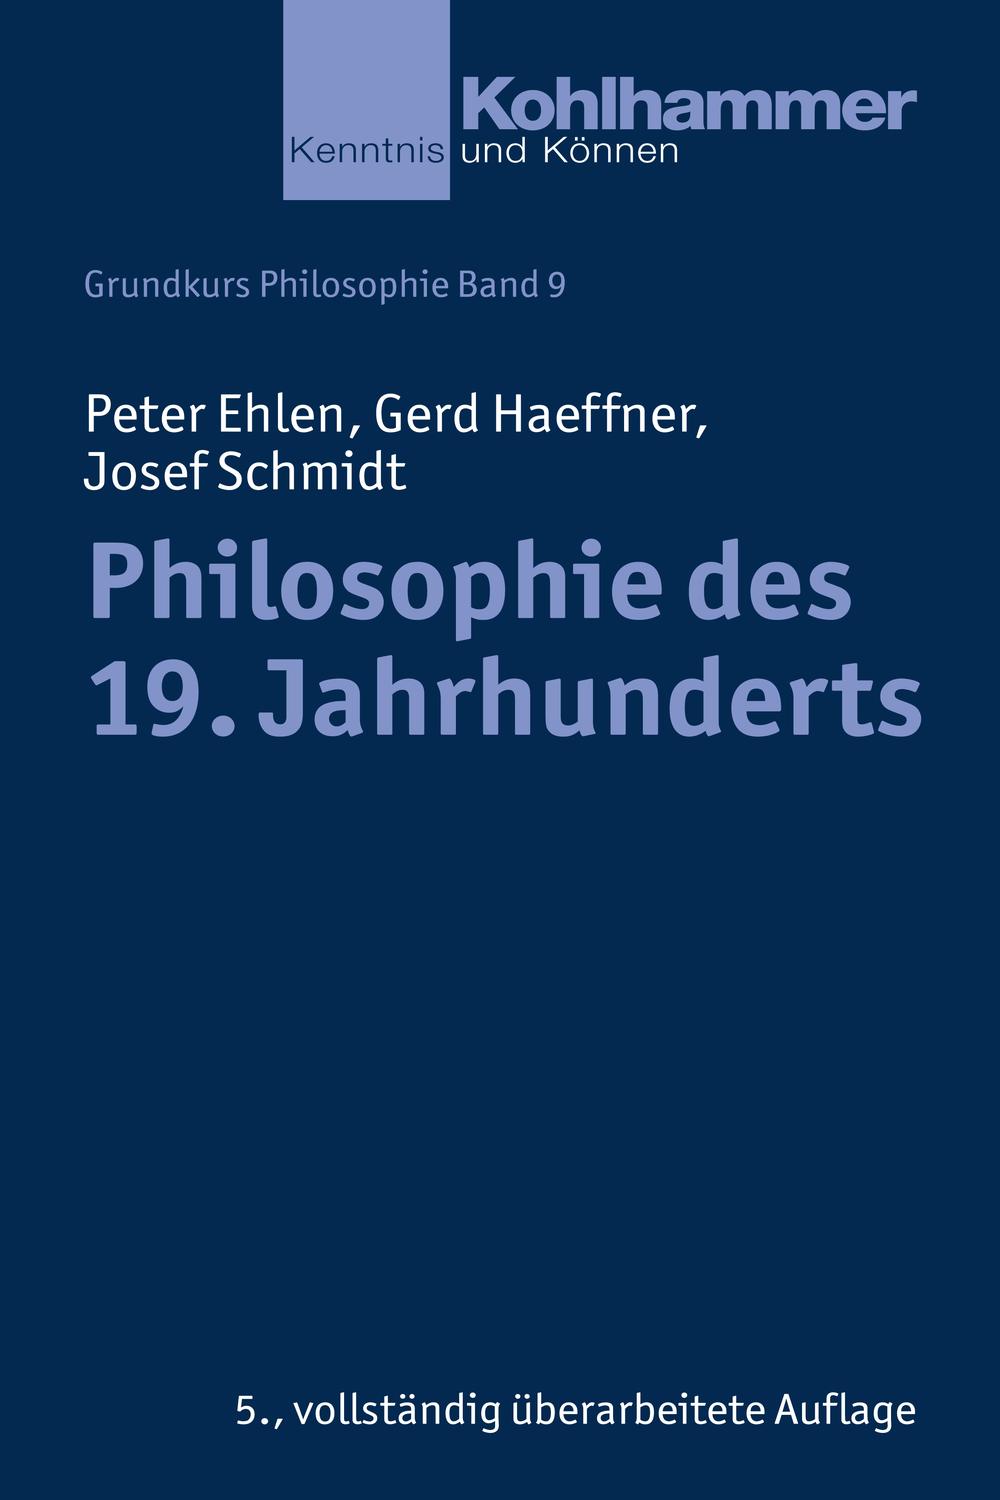 Philosophie des 19. Jahrhunderts - Peter Ehlen, Gerd Haeffner, Josef Schmidt,,